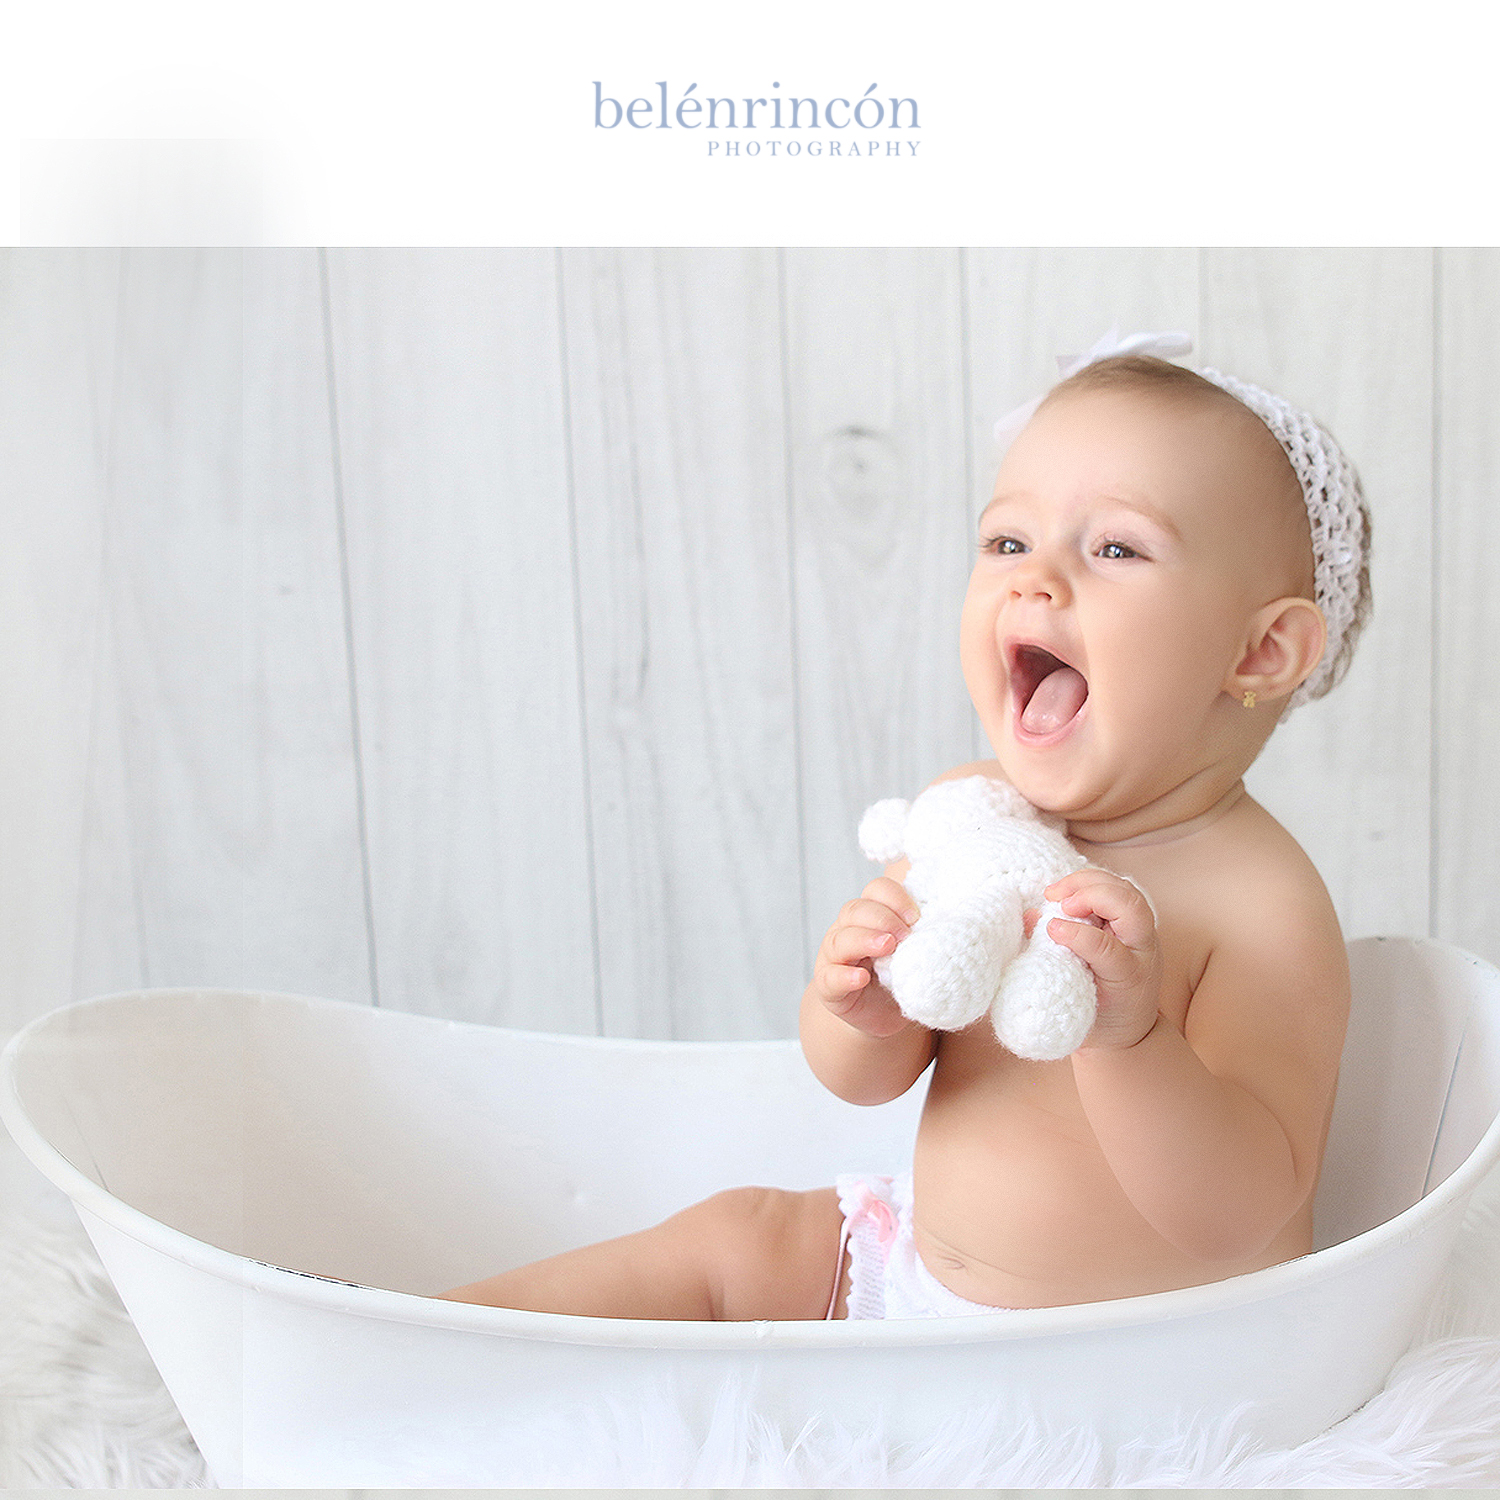 Durante las sesiones de bebés se pueden hacer fotos tan divertidas como las que le hicimos a la pequeña María en la bañera. 